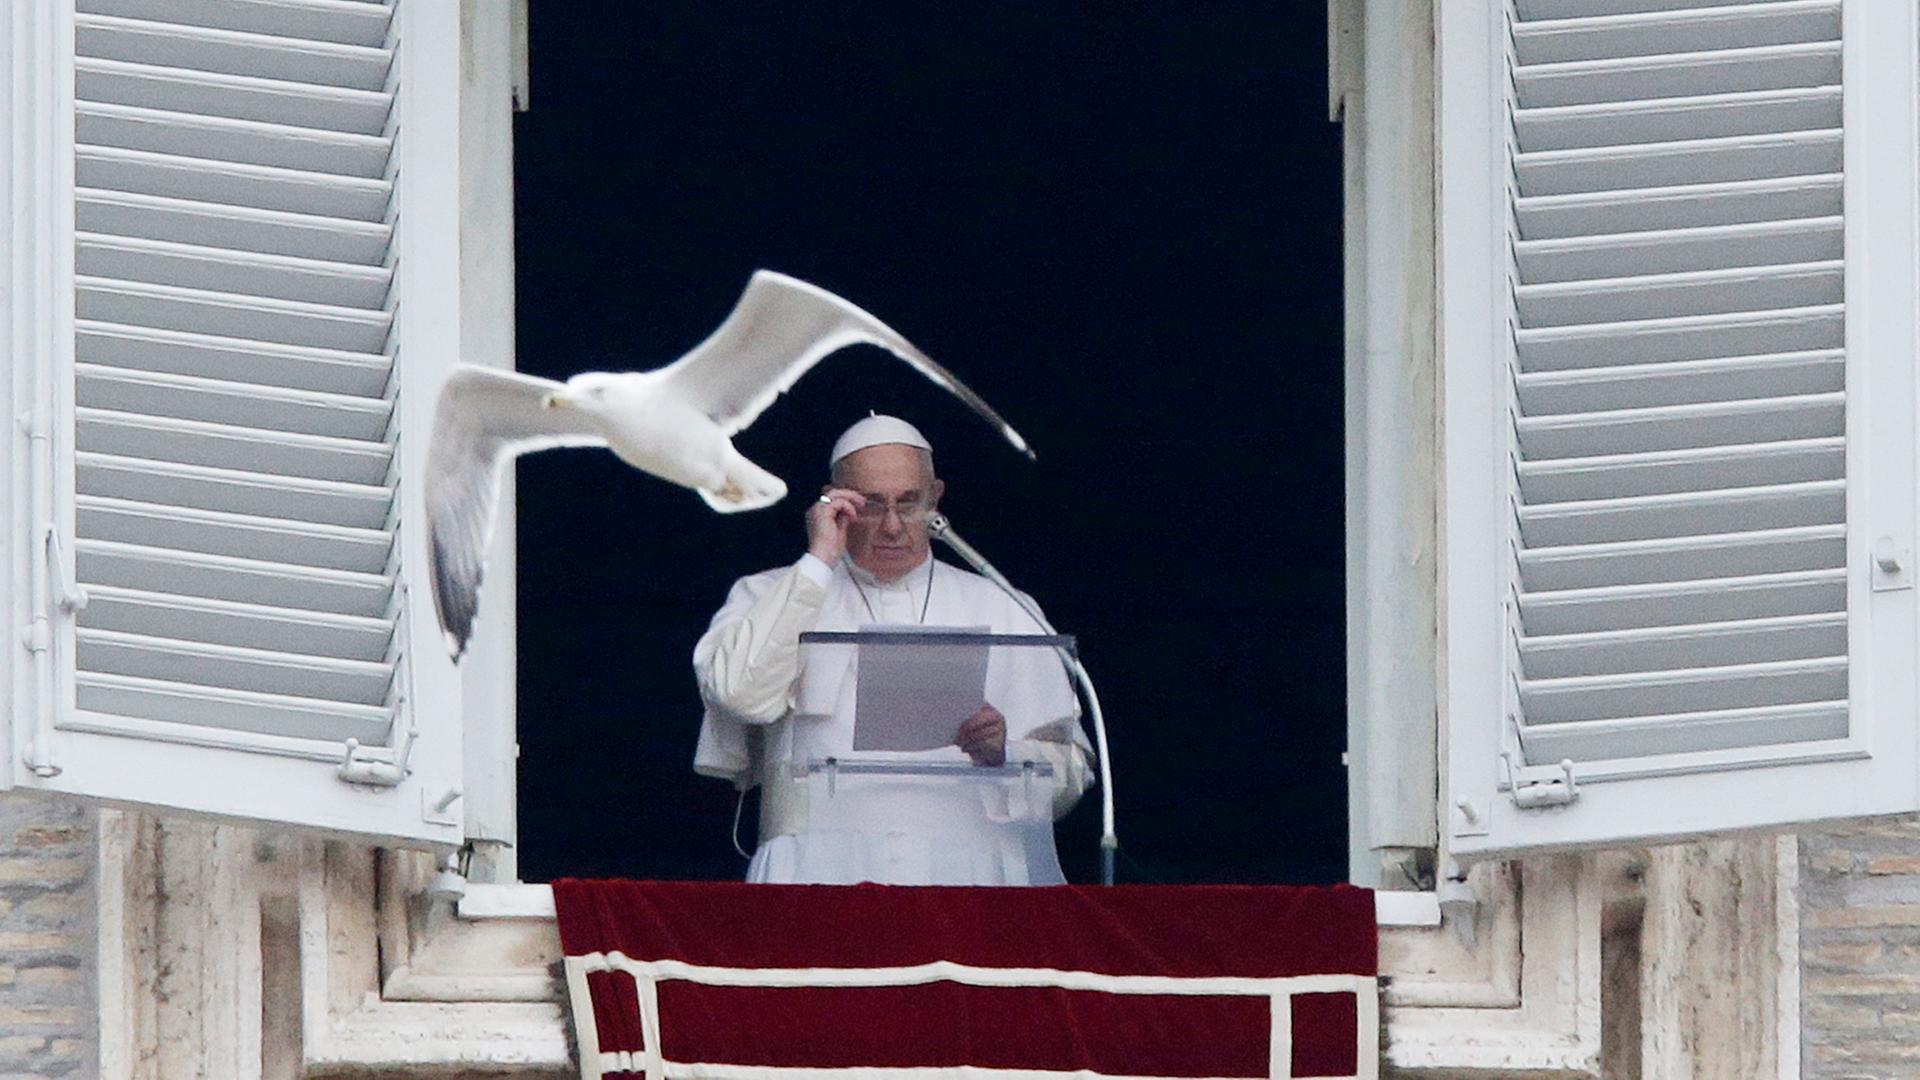 Papst Franziskus hält eine Rede vom Balkon des Vatikan, während eine Möwe an ihm vorbeifliegt.